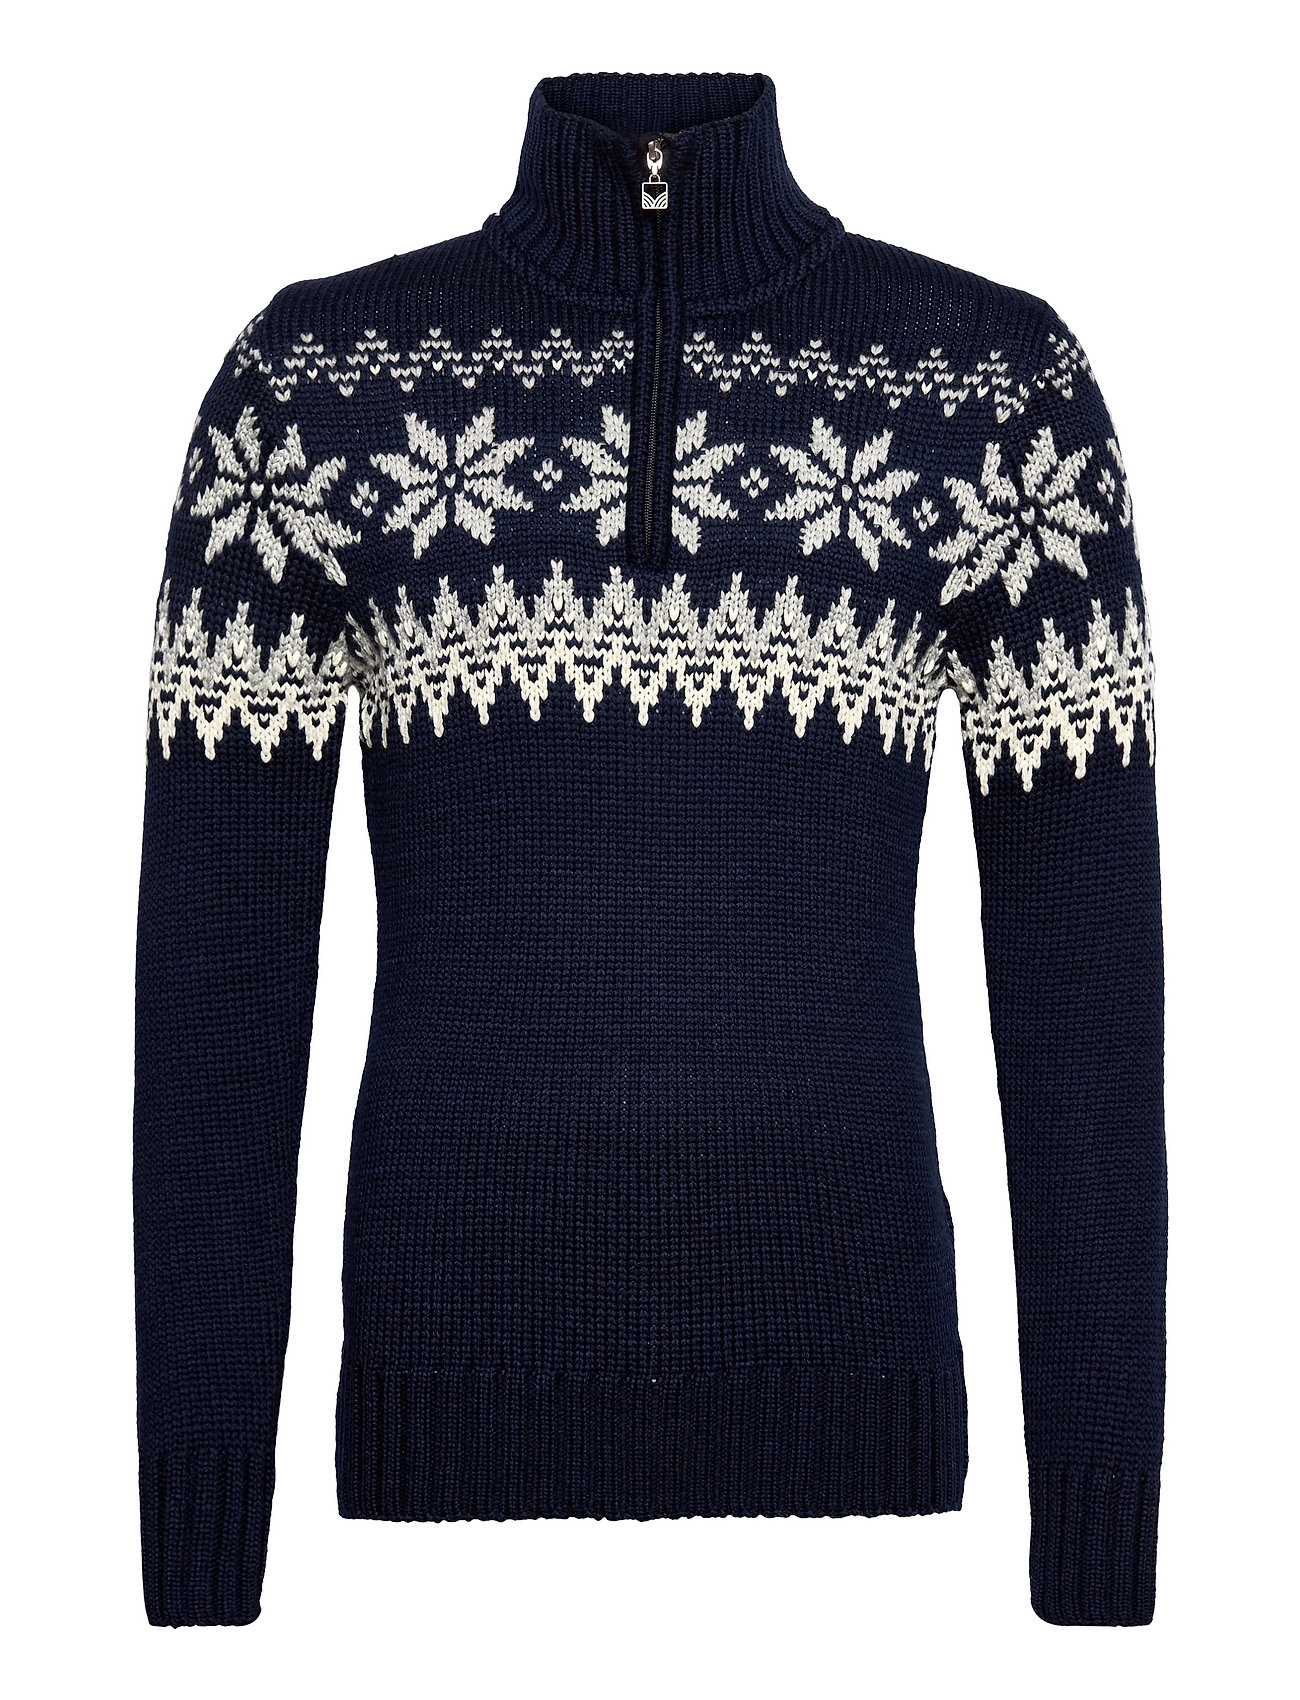 Myking Masc Sweater Knitwear Half Zip Pullover Blå Dale Of Norway